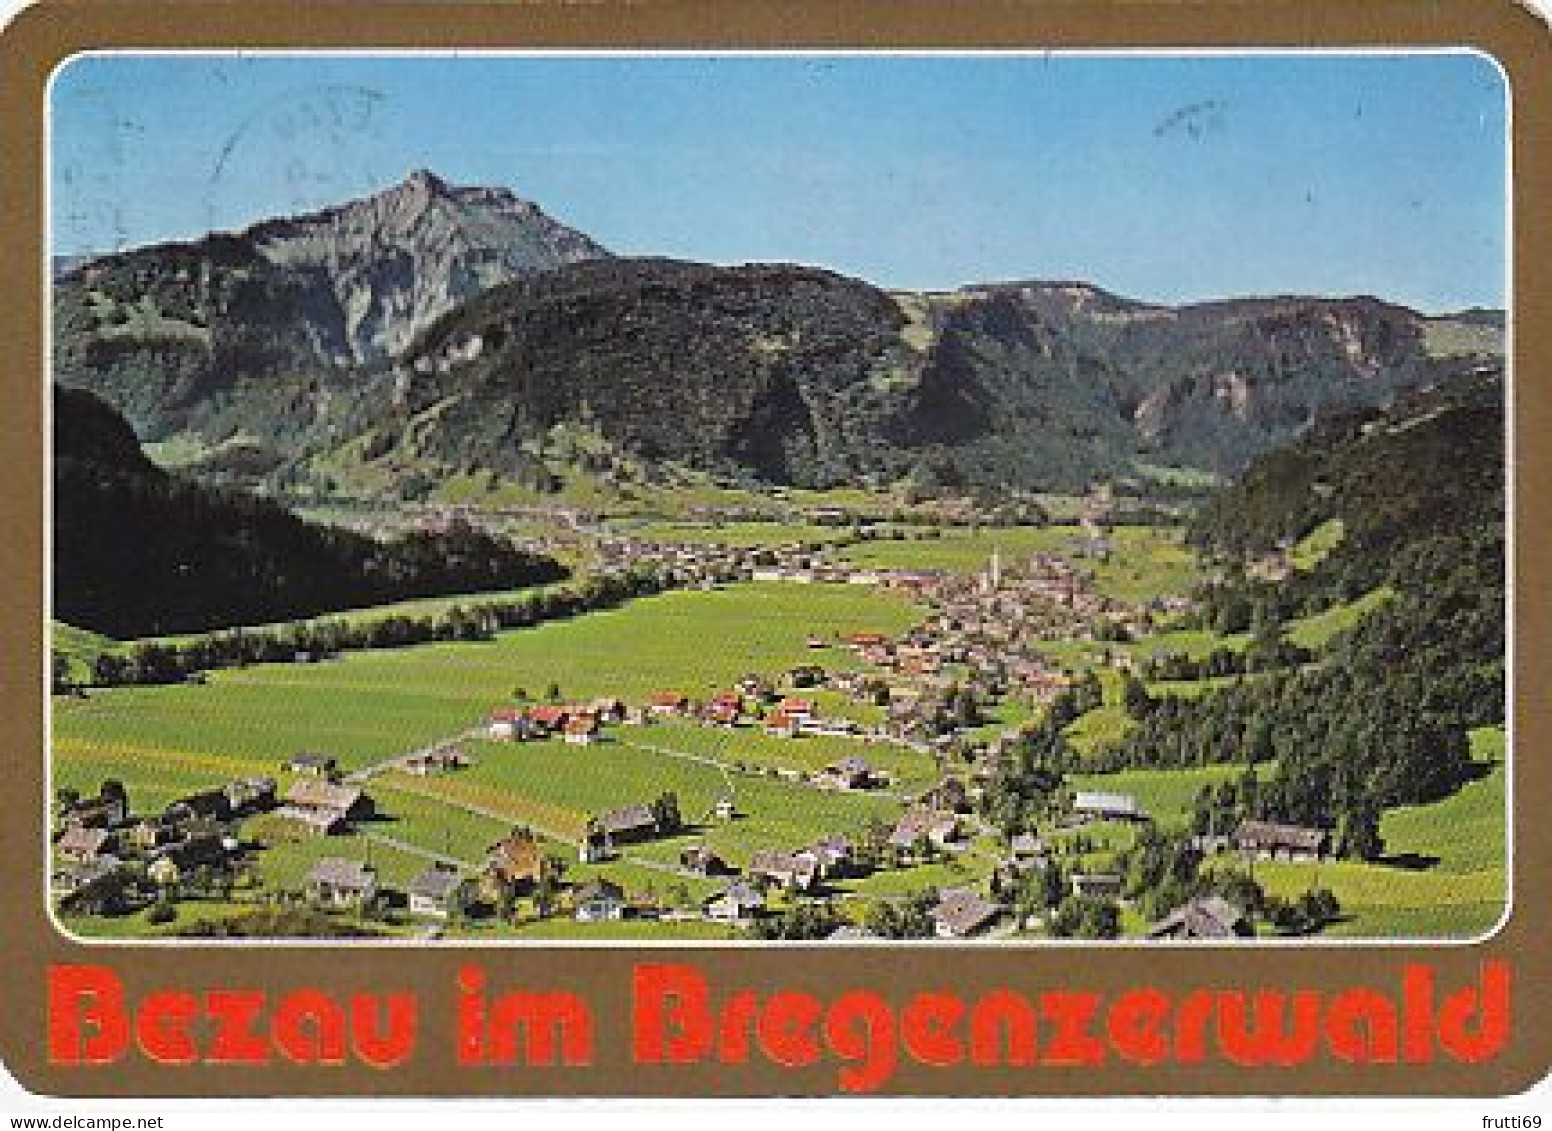 AK151526 AUSTRIA - Bezau Im Bregenzerwald - Bregenzerwaldorte